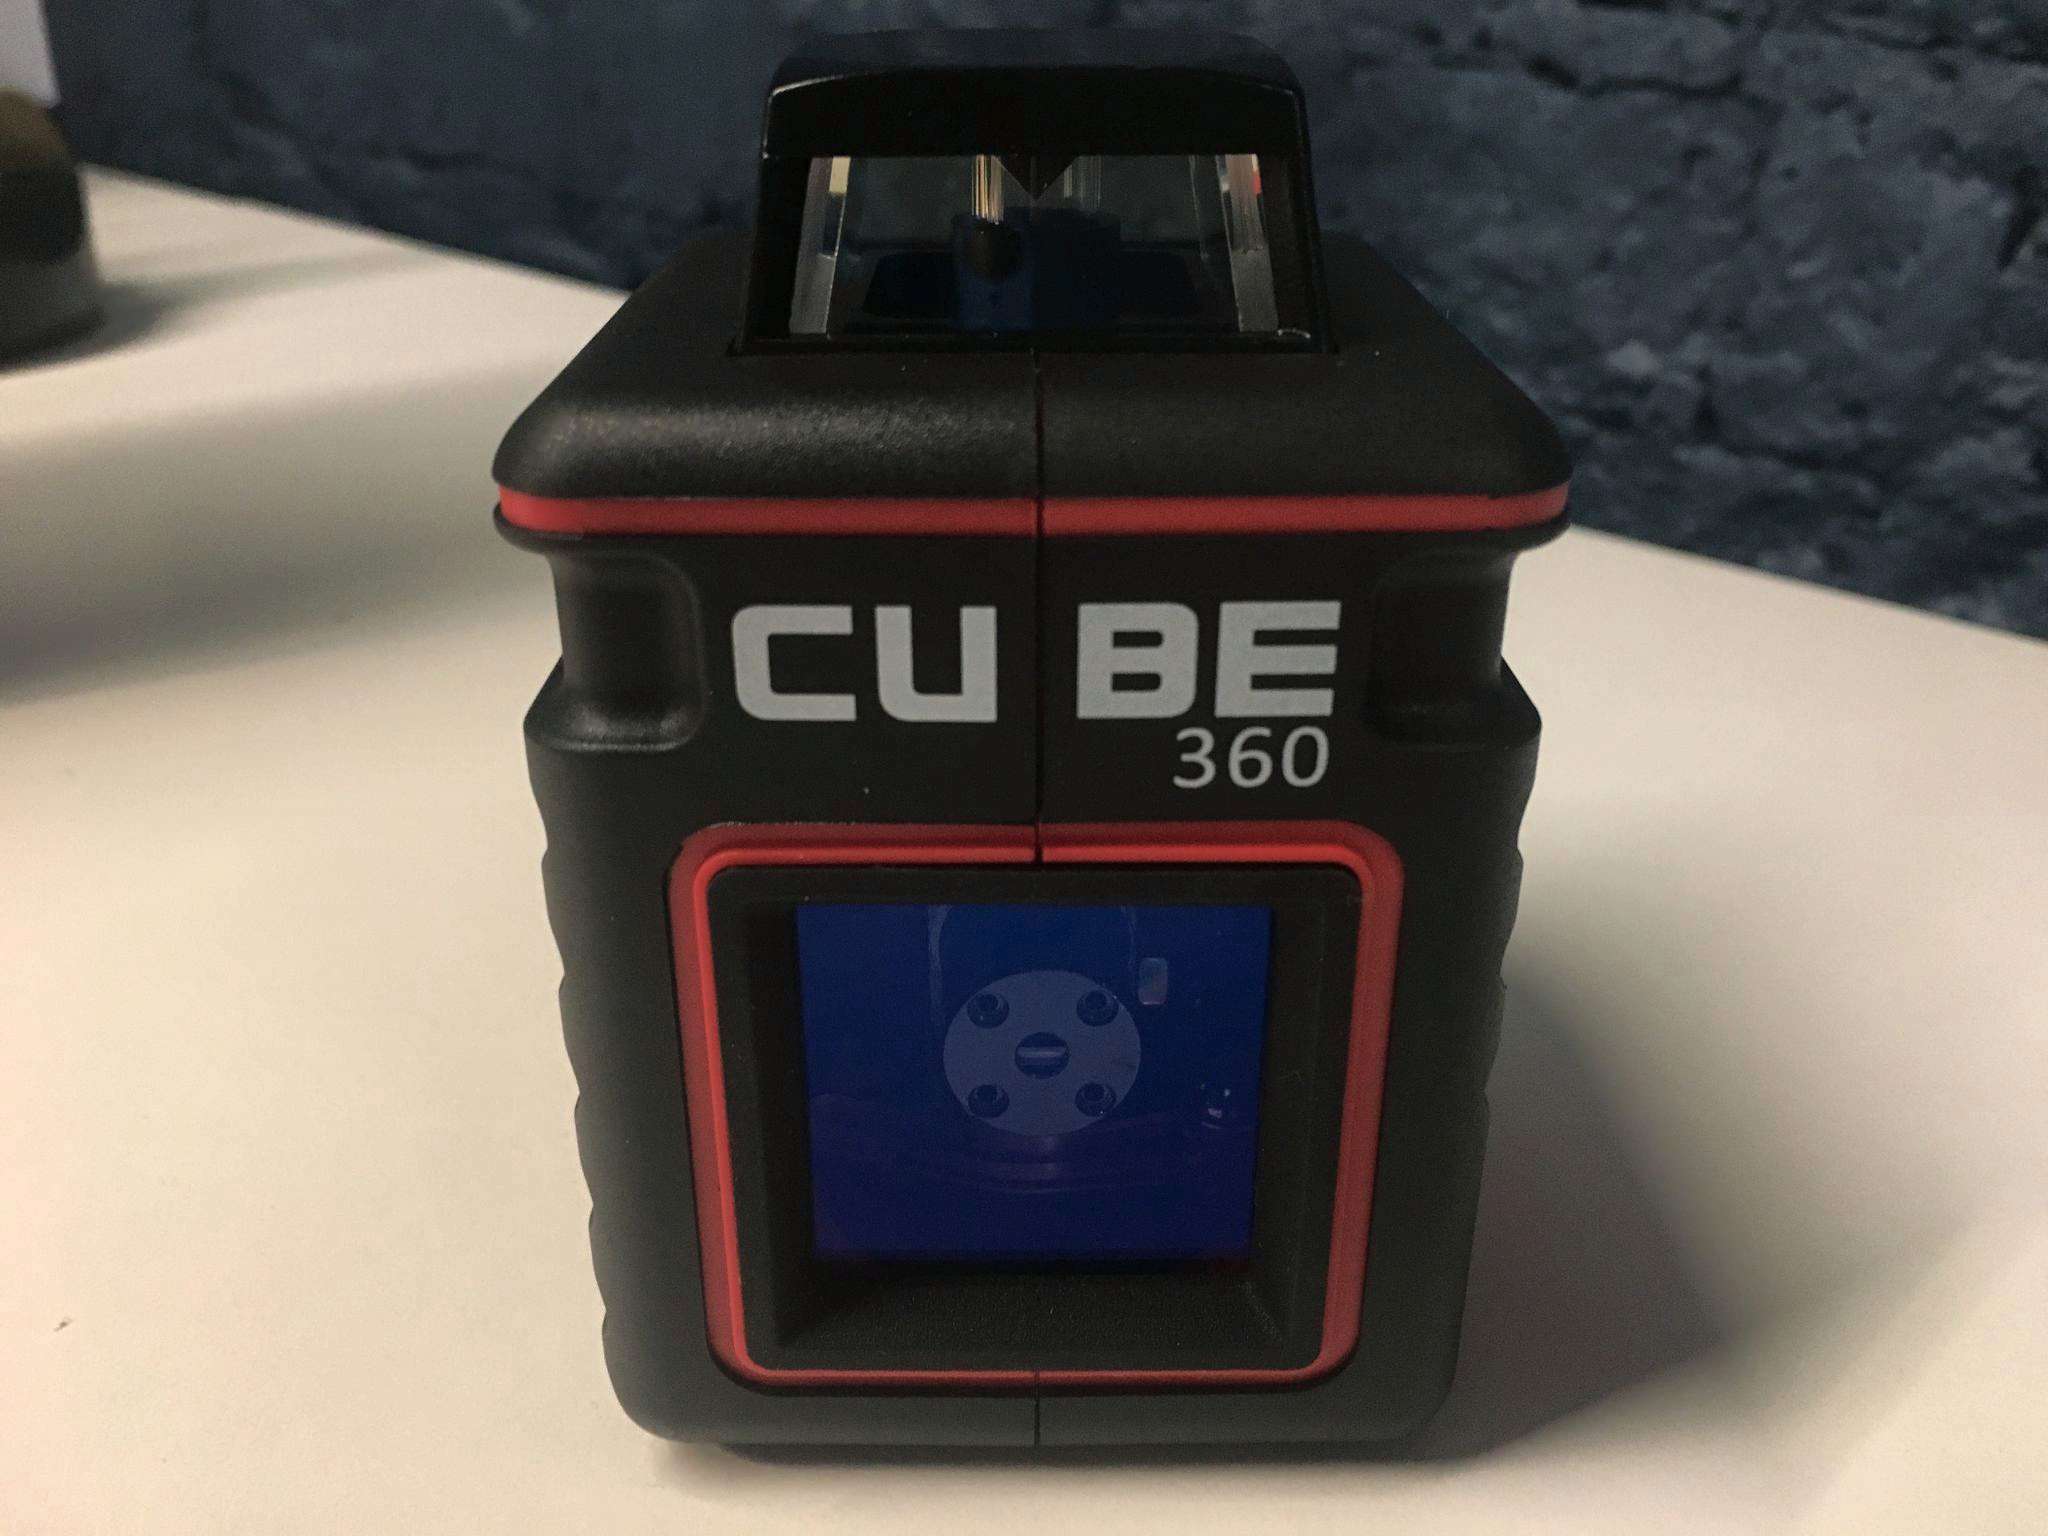 Лазерный уровень cube 360 professional edition. Ada Cube 3d professional Edition лазерный уровень. Лазерный уровень Cube 360. Уровень лазерный ada Cube 3-360. Кейс для лазерный уровень ada Cube 360.